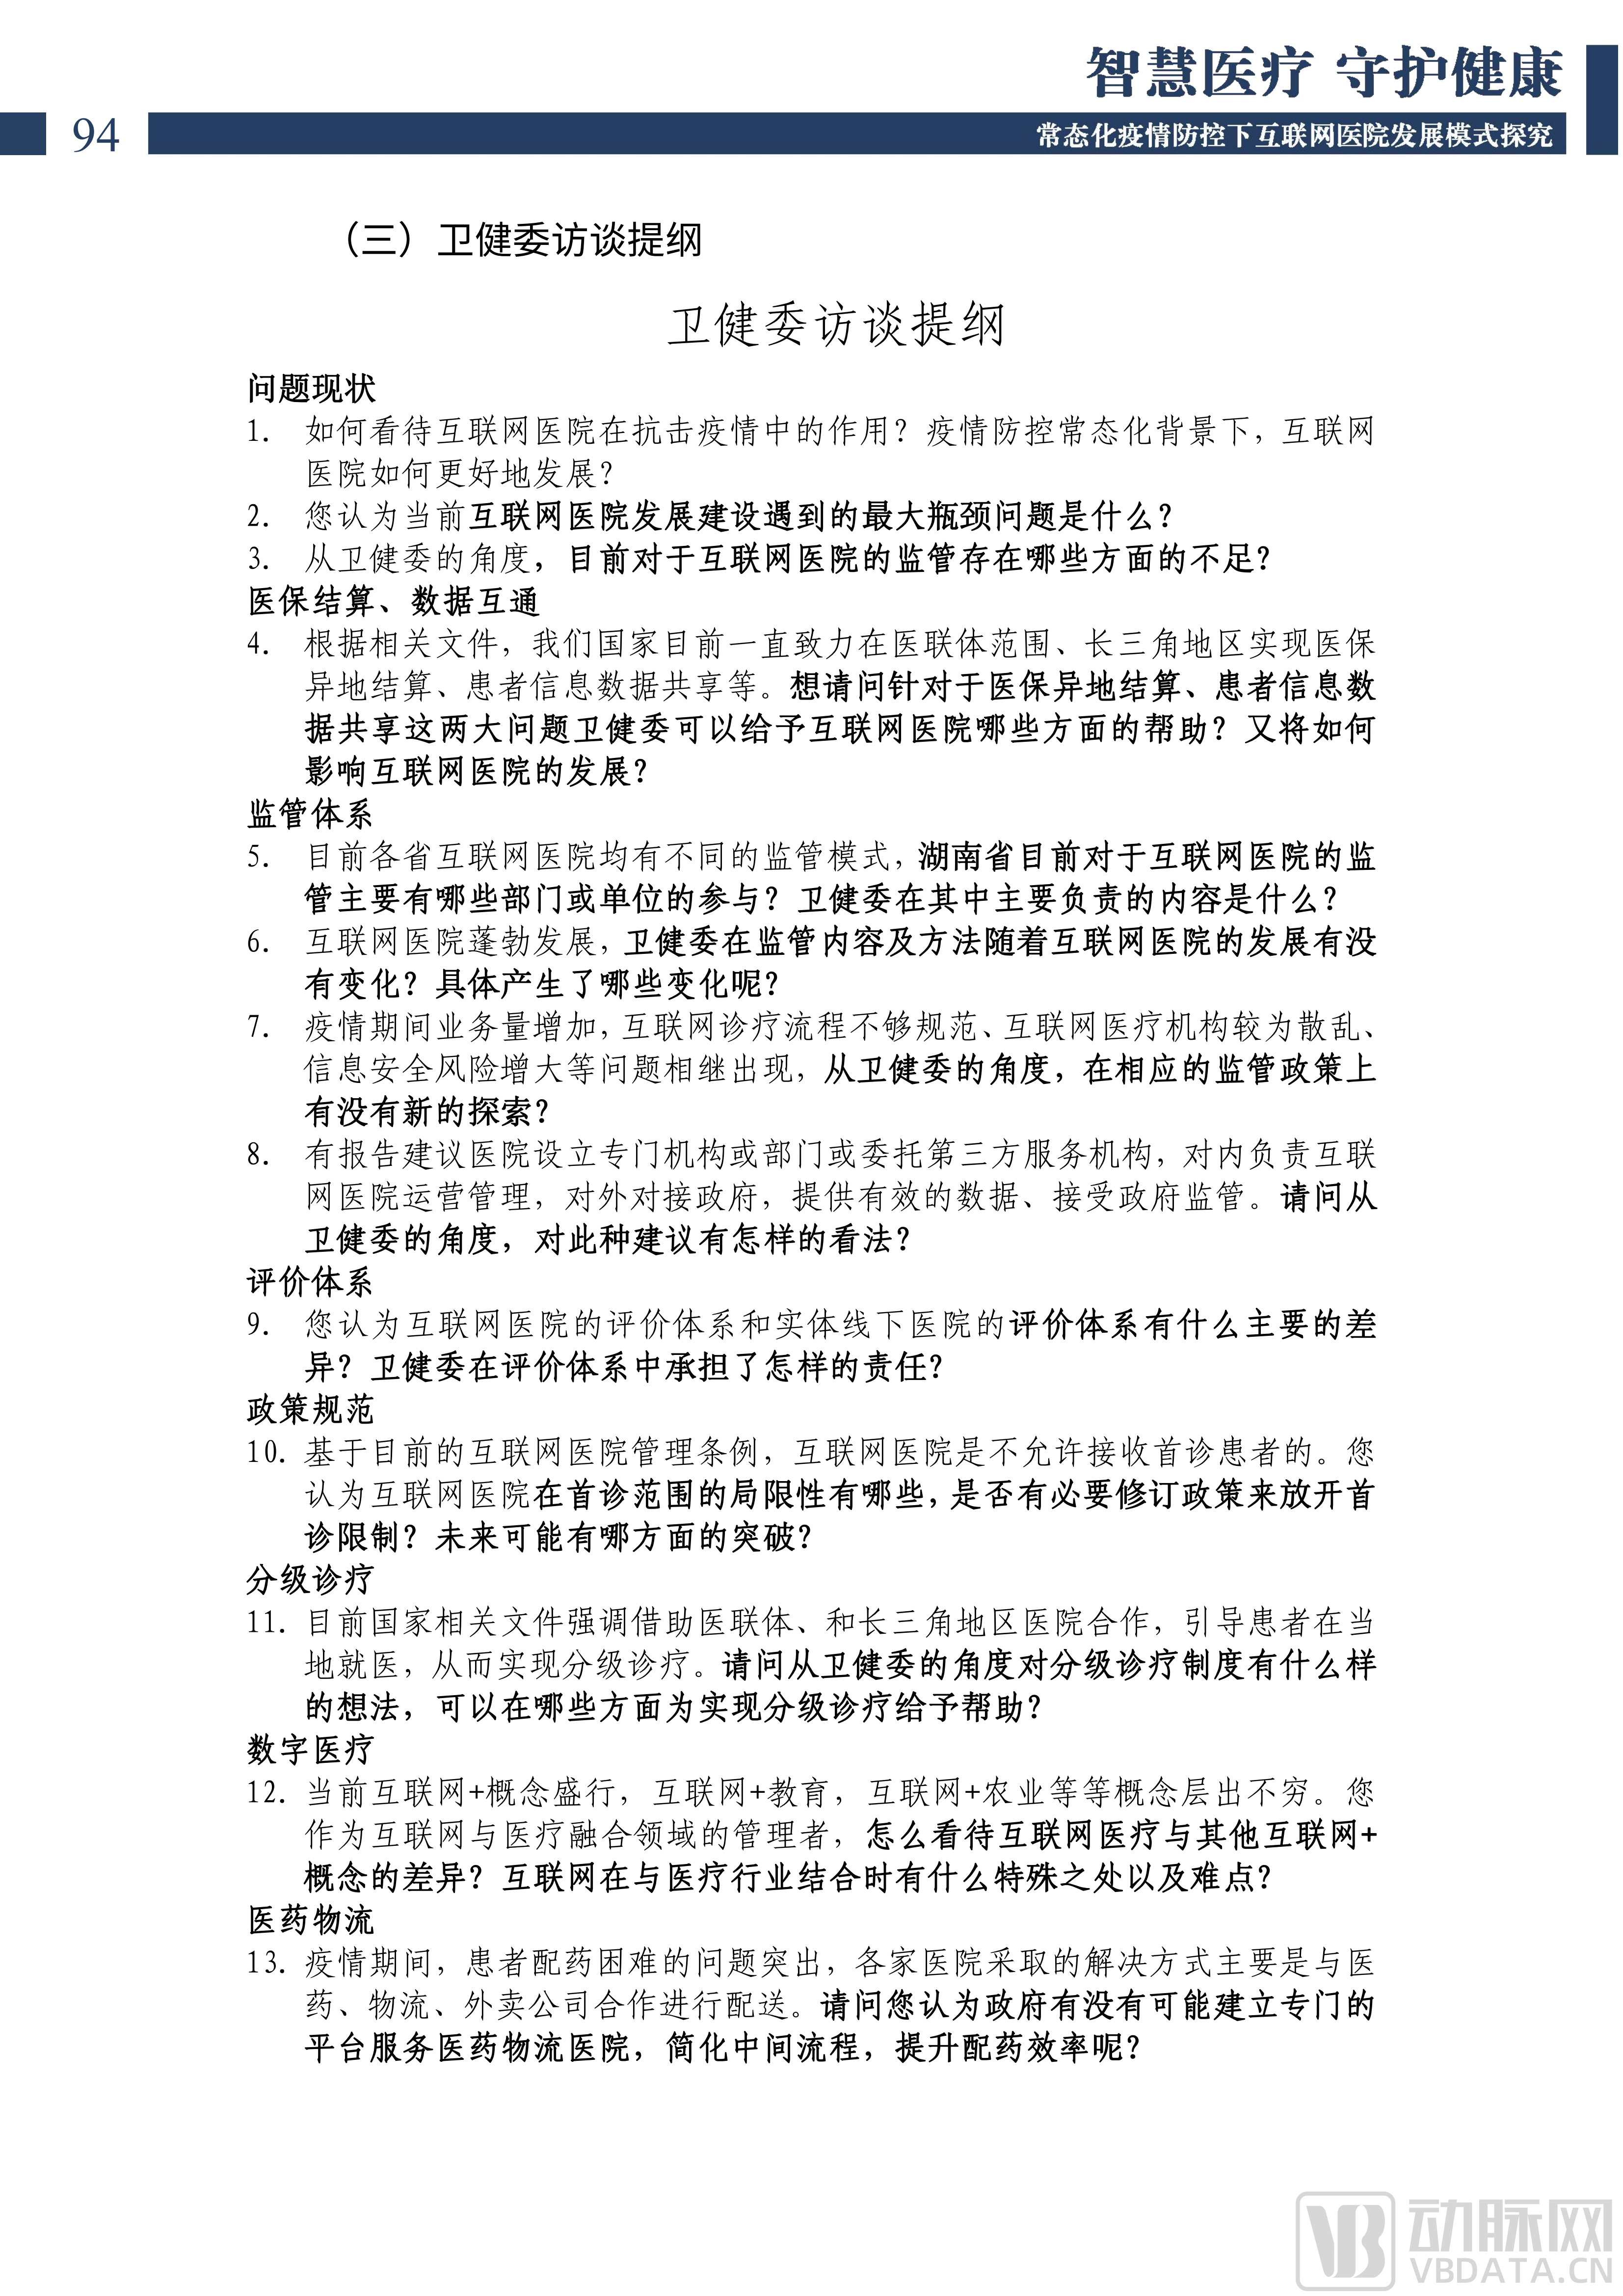 2022中国互联网医院发展调研报告(1)_95.png